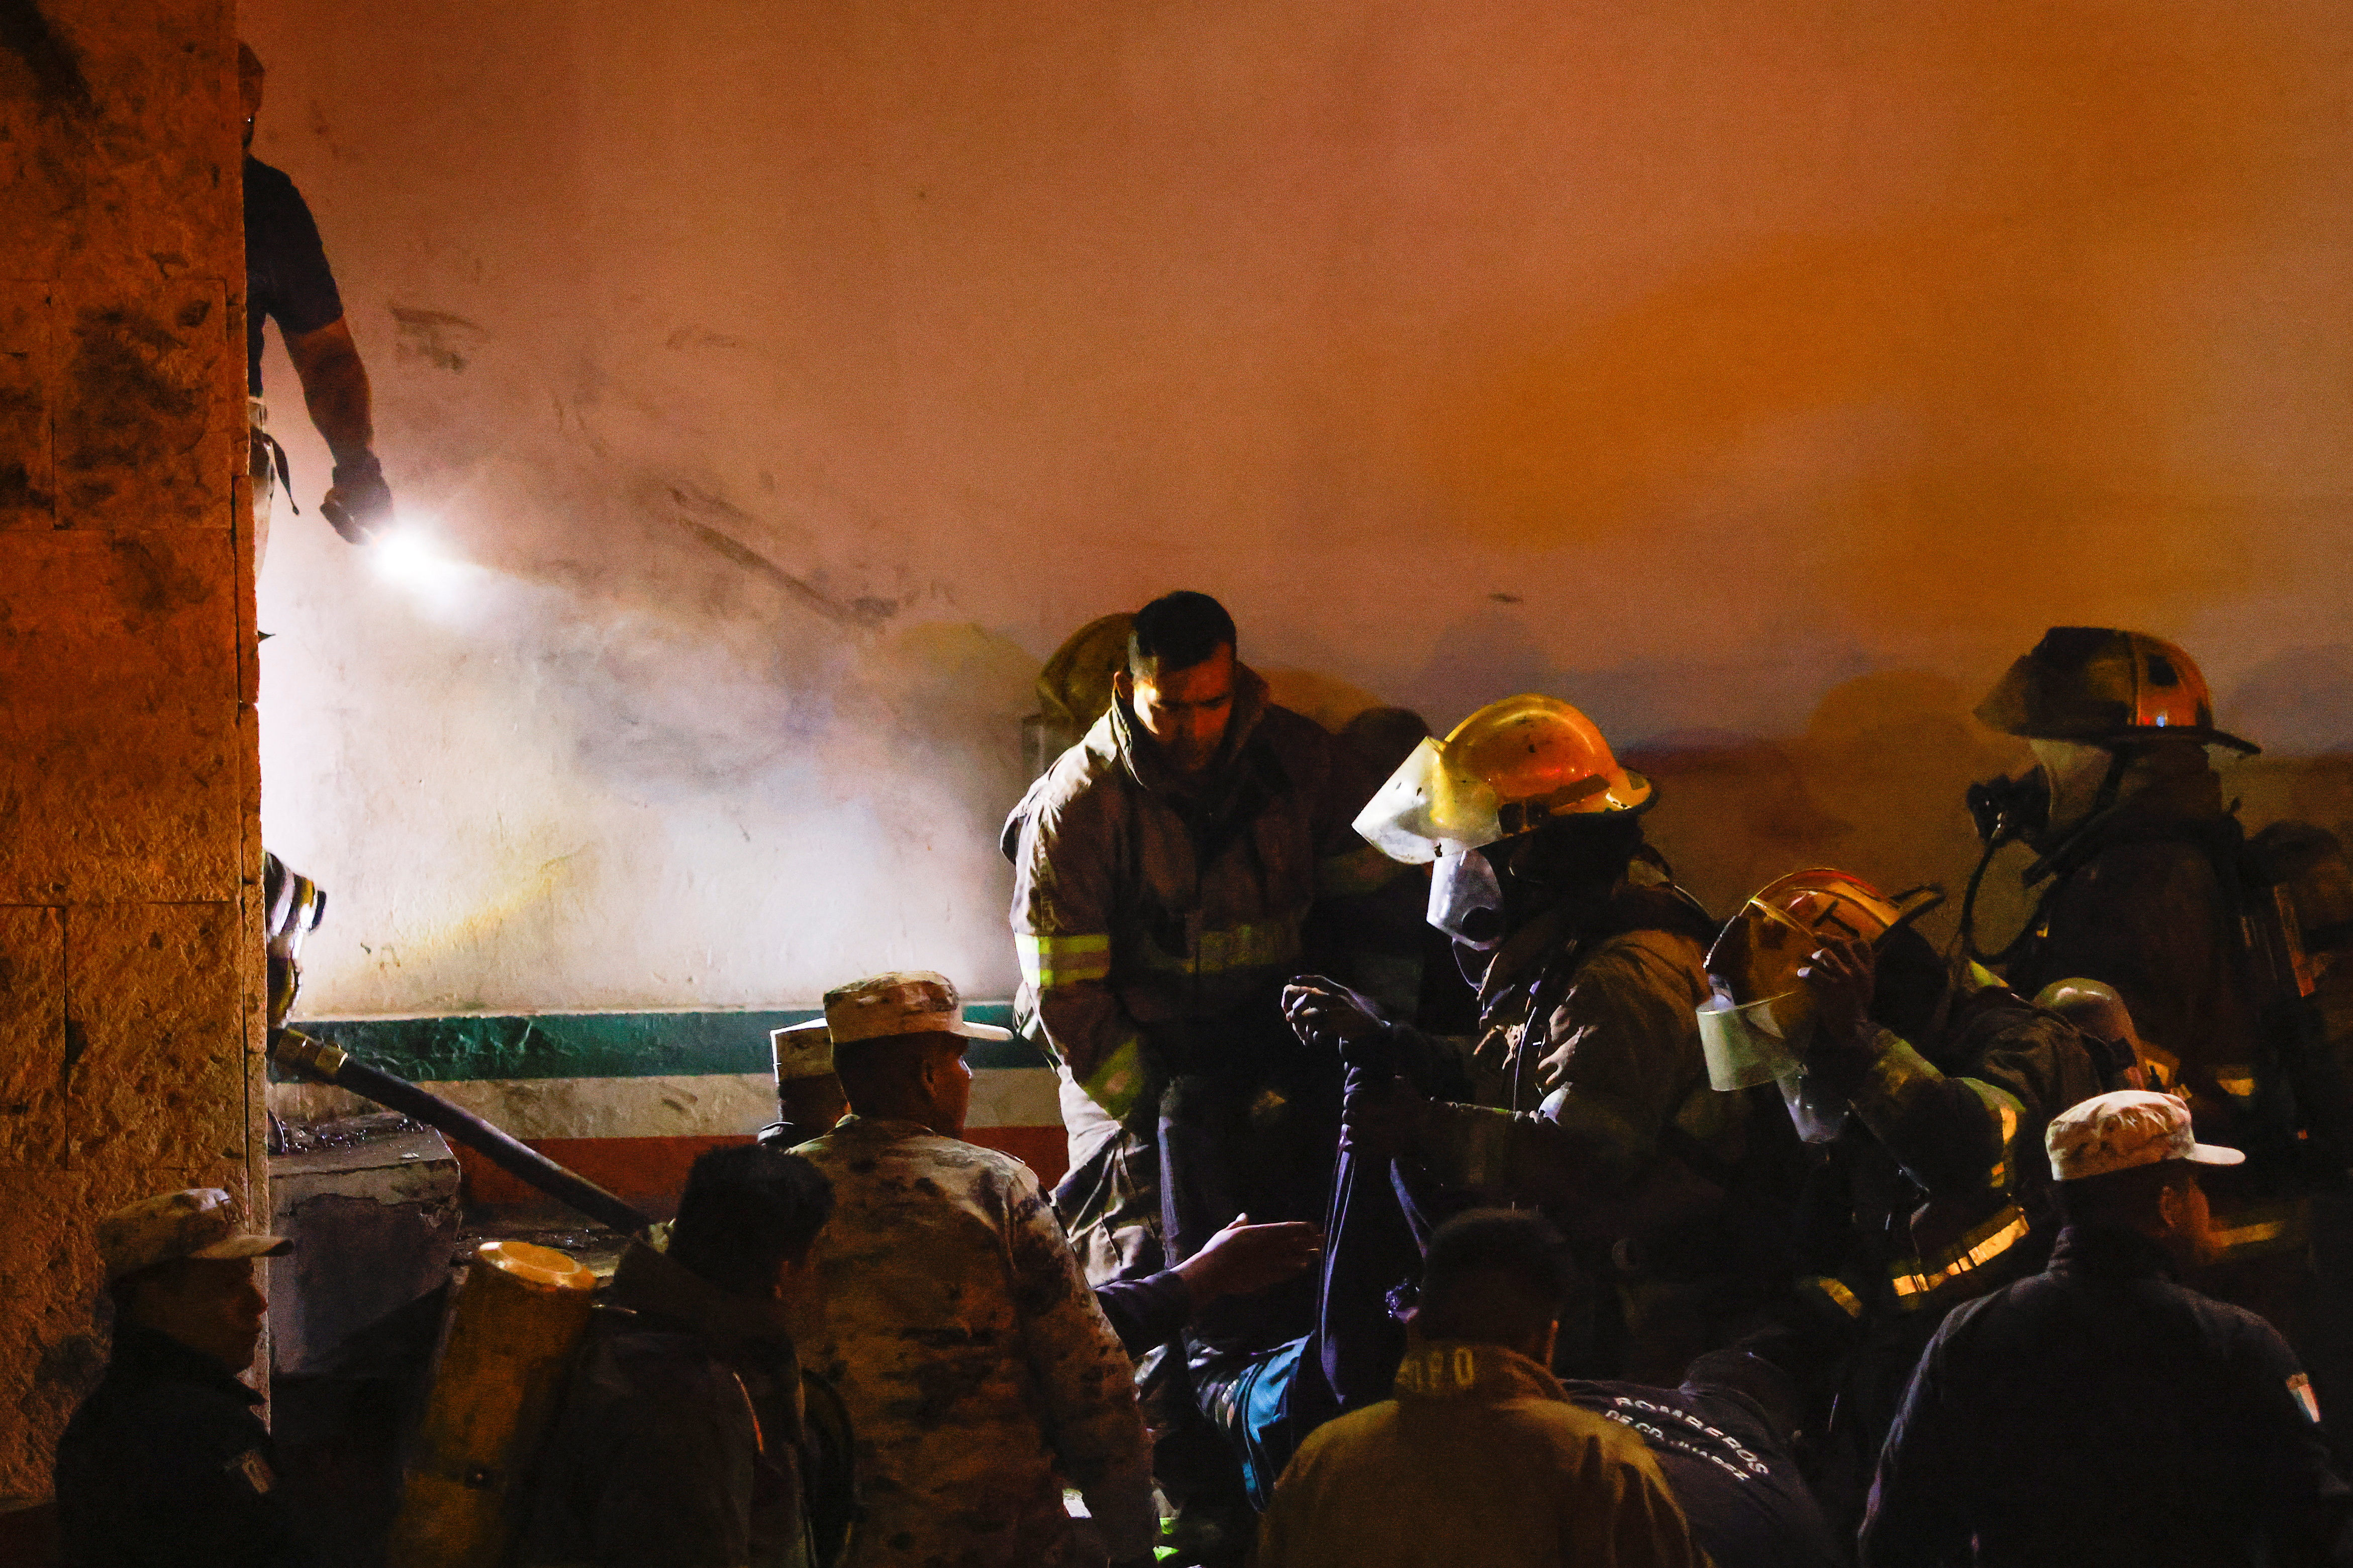 Los servicios de emergencia apagaron las llamas y evacuaron el establecimiento. (REUTERS/José Luis González)